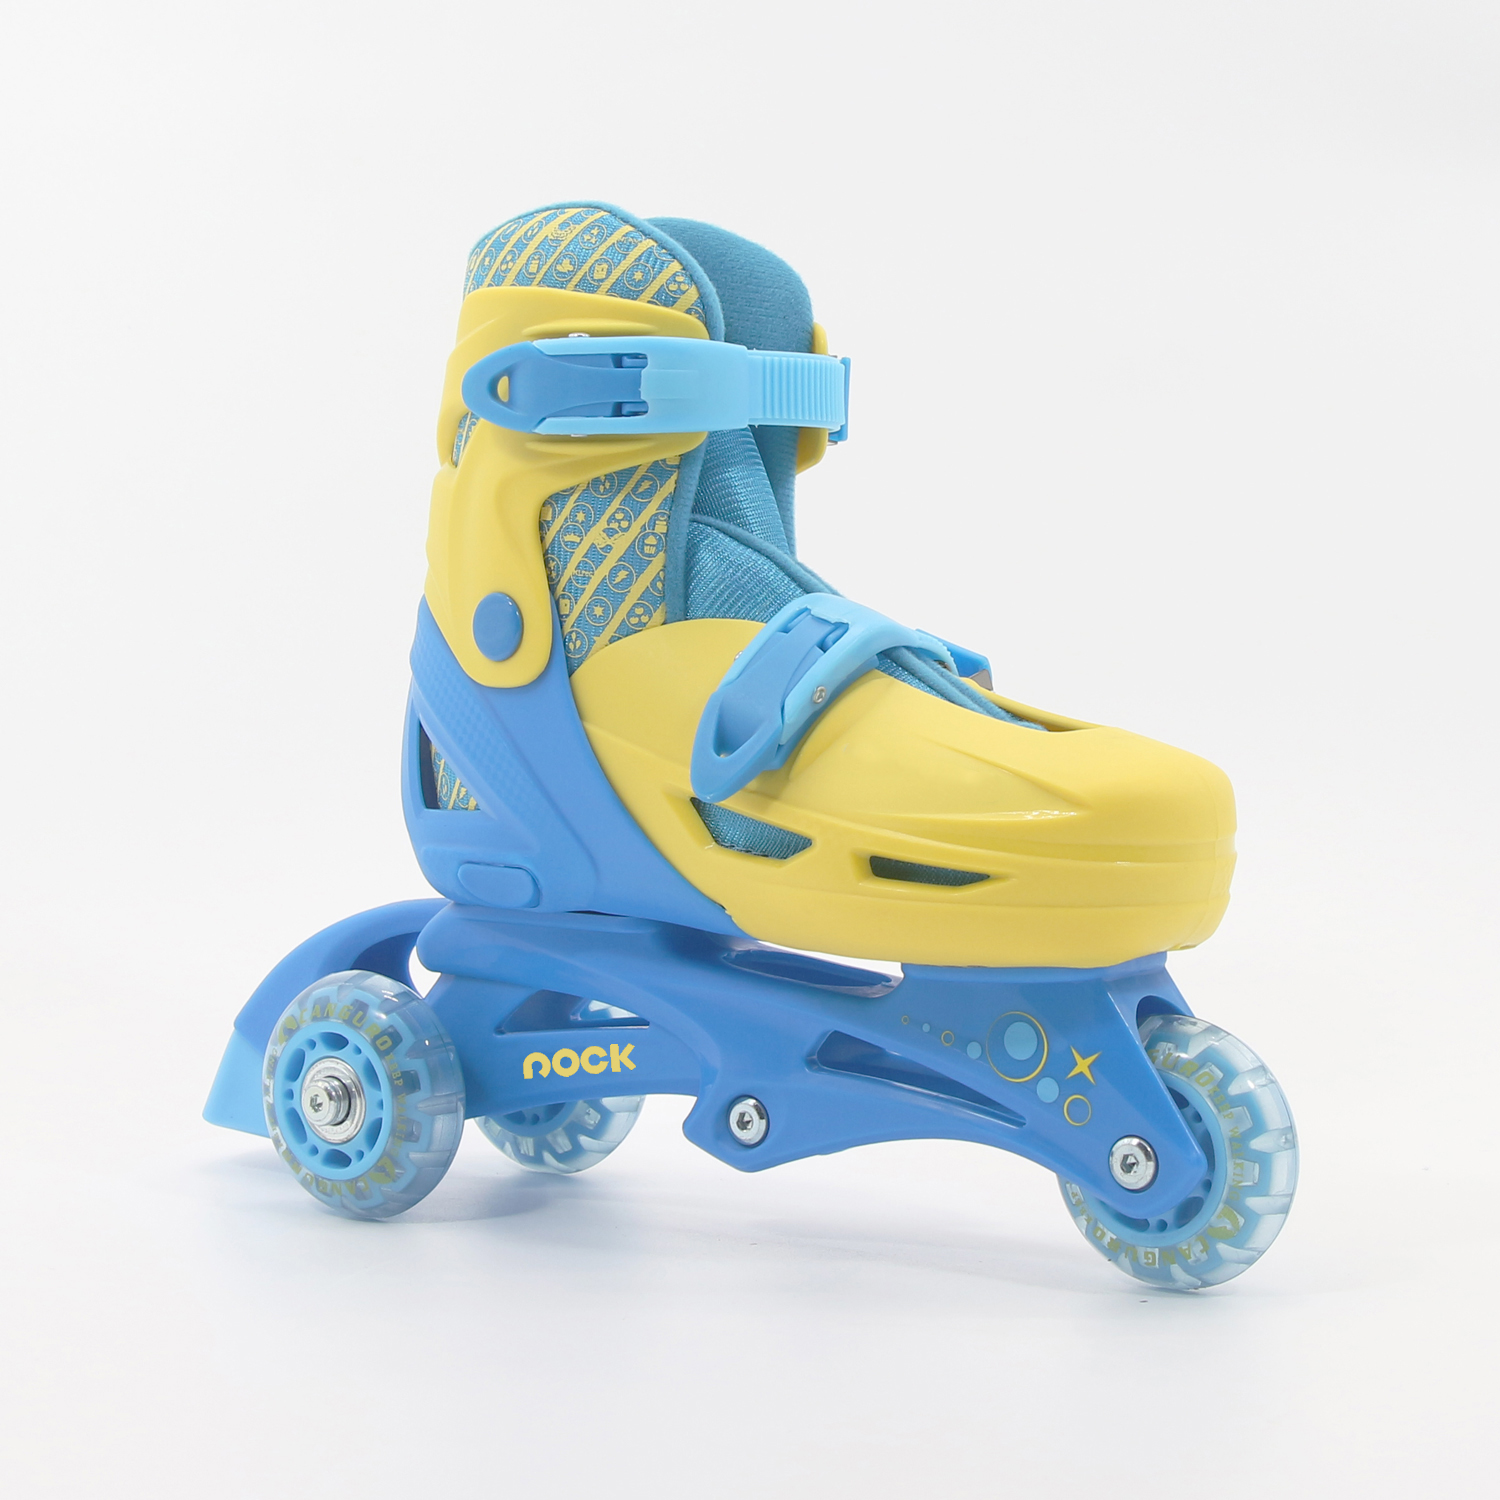 Nuevos patines para niños pequeños, convierte de tri-rueda a patines en línea